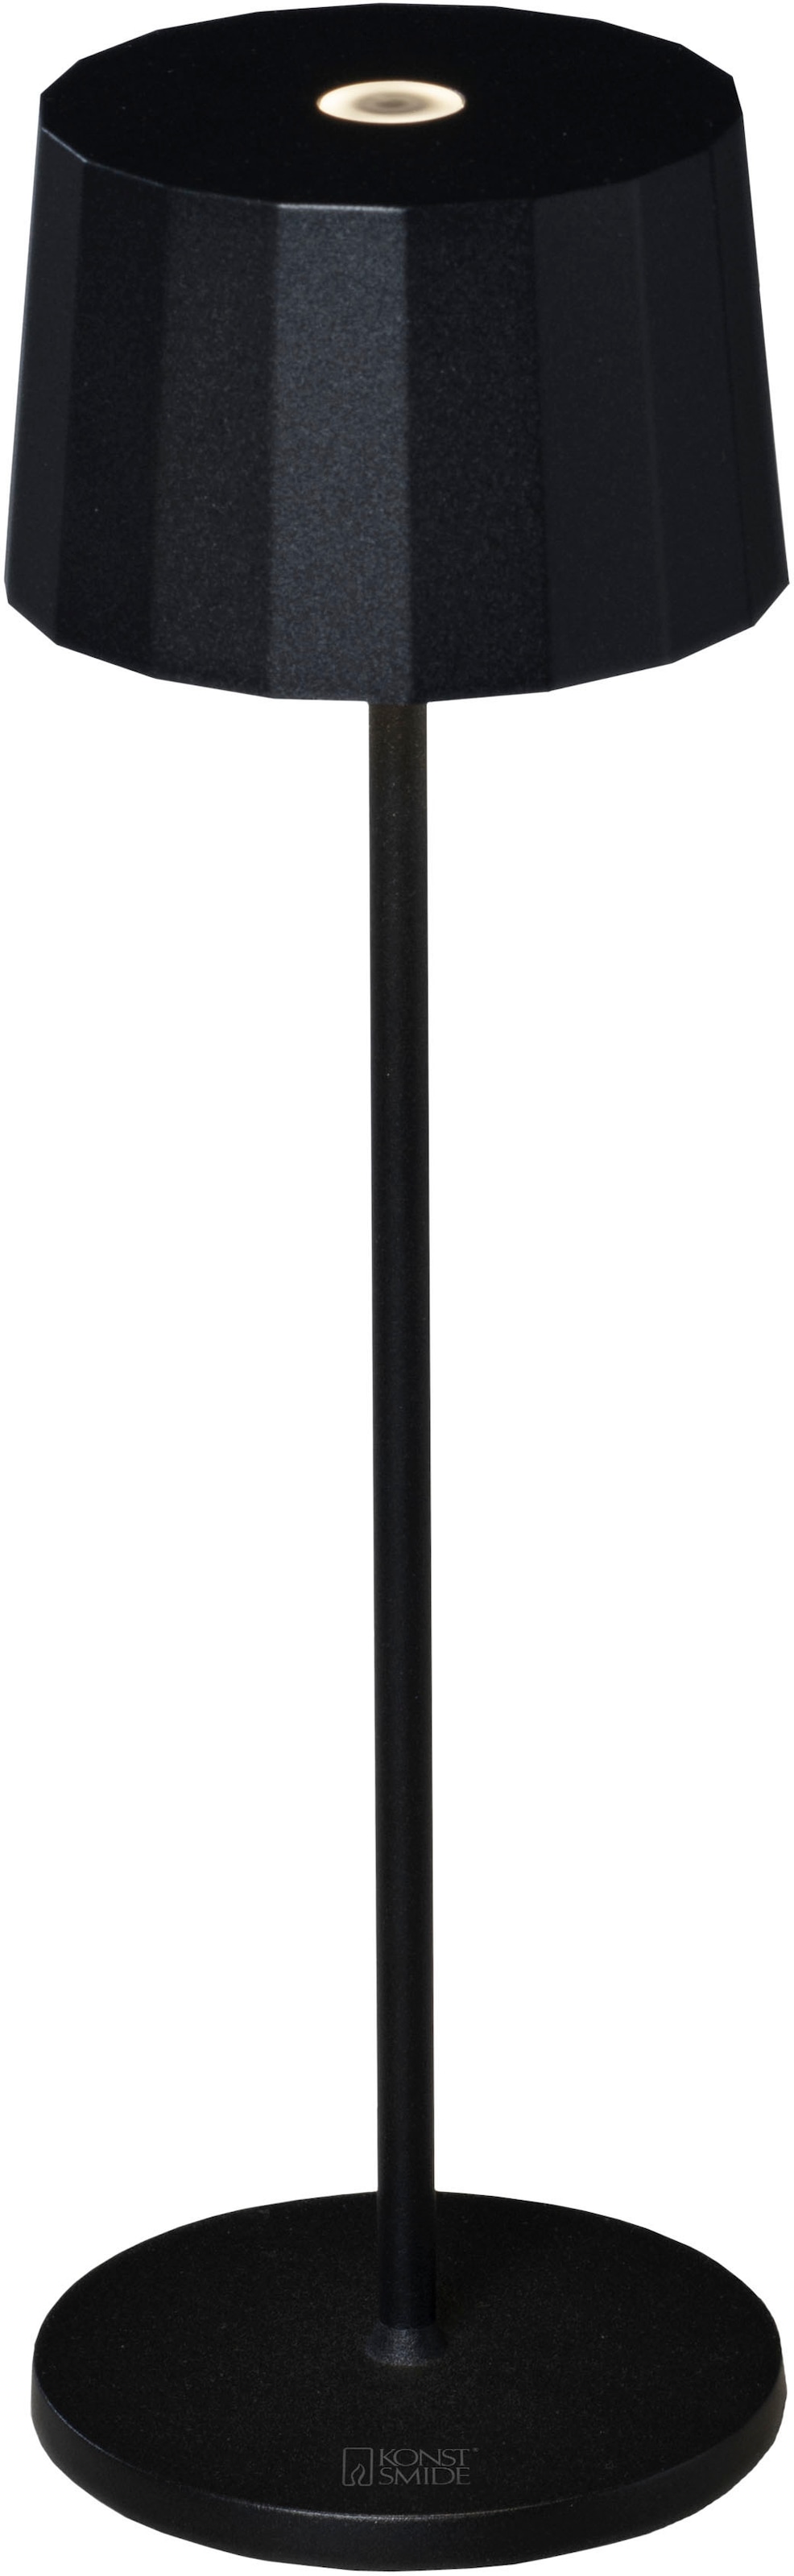 LED Tischleuchte »Positano«, Positano LED USB-Tischleuchte schwarz, Farbtemperatur, dimm